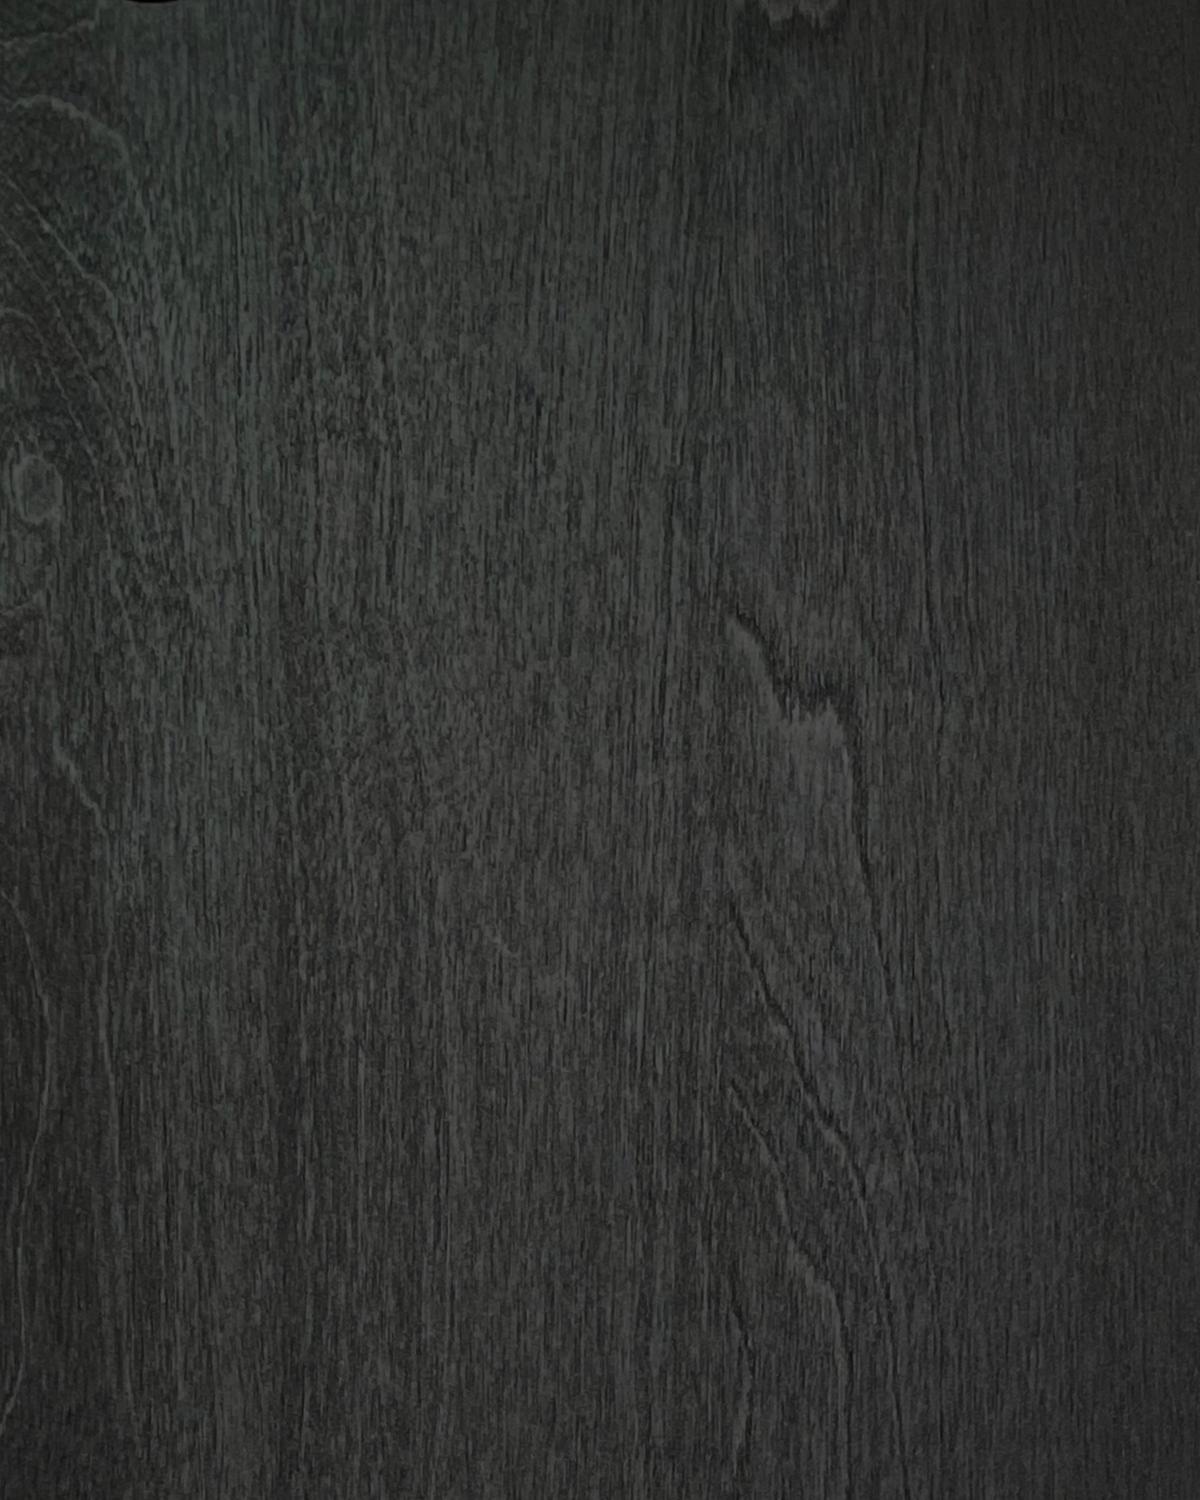 Rahmen weben 
Sideboard, aus Massivholz und Furnierschichtholz. Modern und doch klassisch, kühn und doch bescheiden ist der Schrank ein großartiges Beispiel für zeitgenössisches skandinavisches Design. Entworfen von Lukas Dahlén.

Das